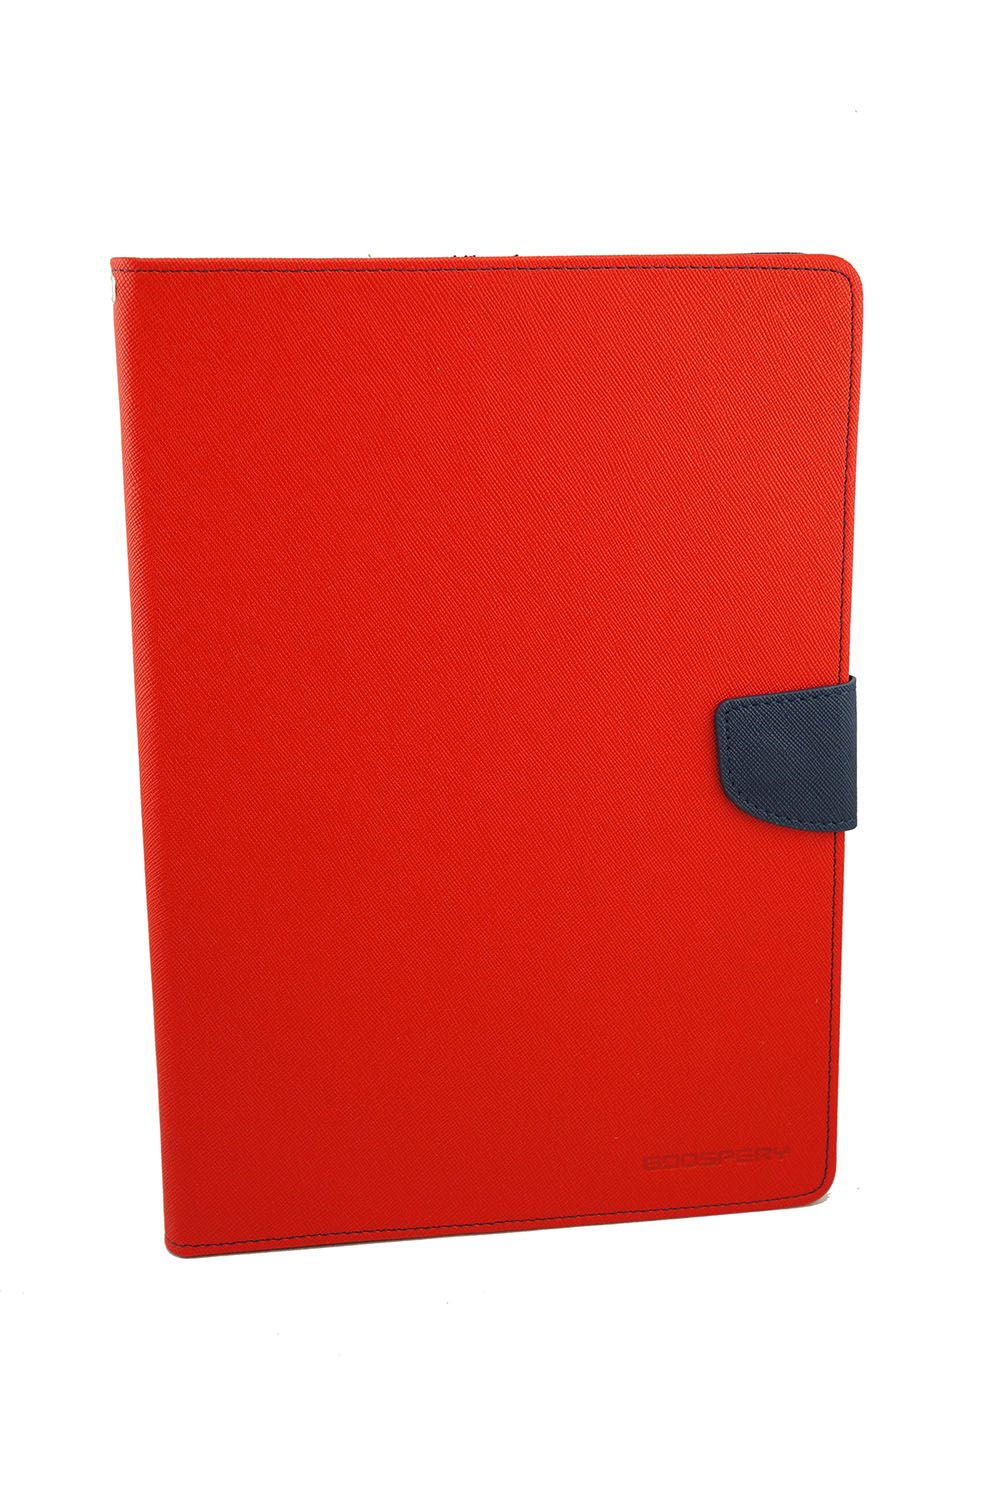 iPad Pro 9.7 Goospery Mercury Fancy Diary - Red/Navy